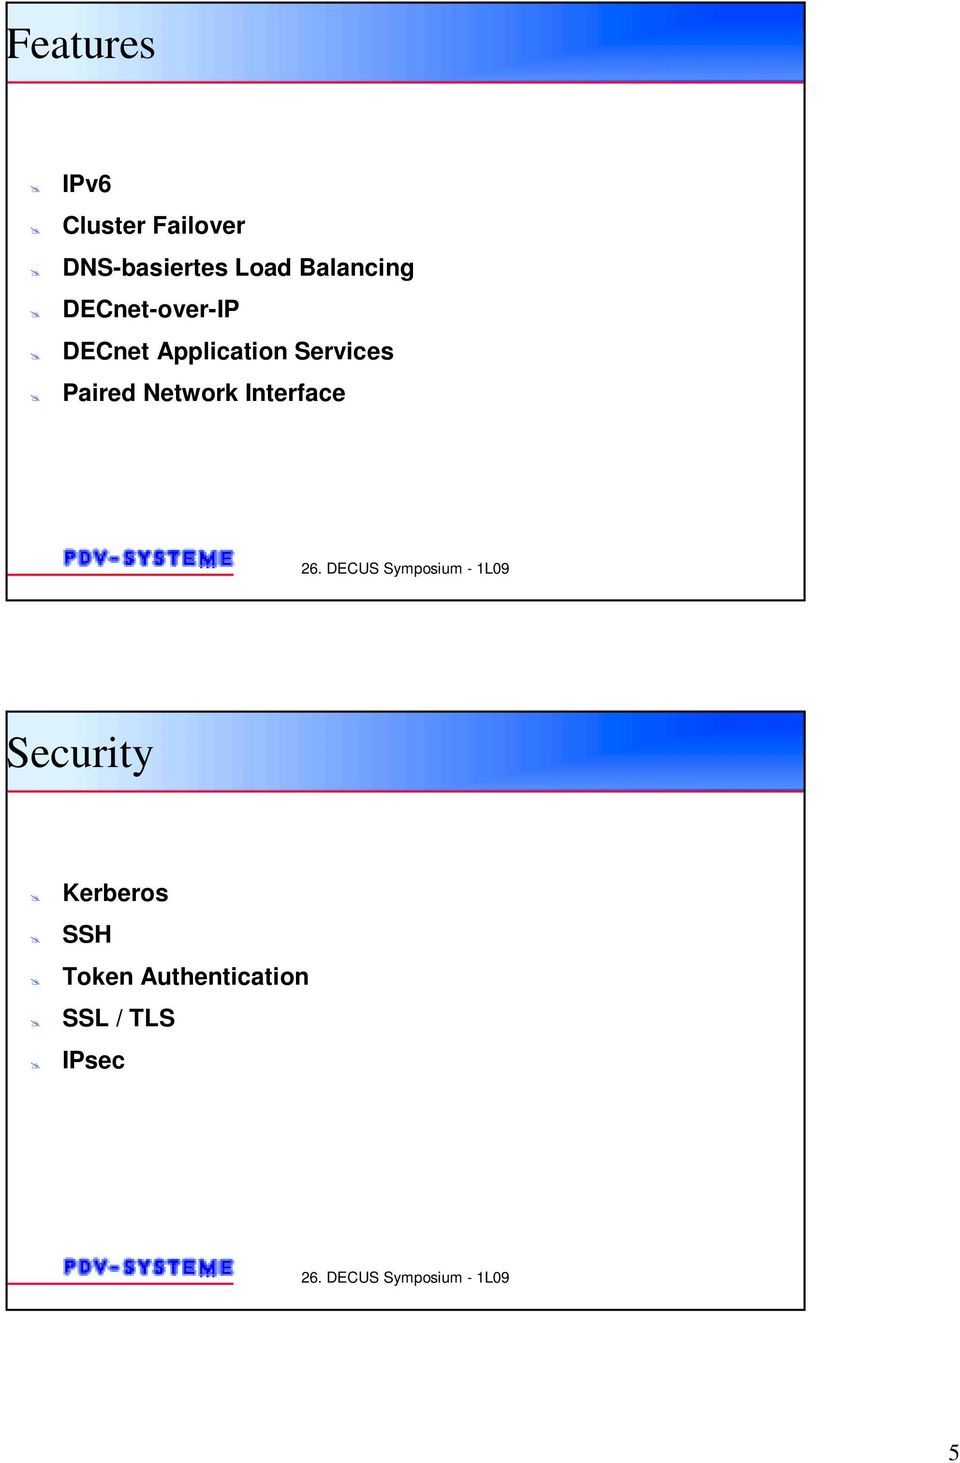 DECnet Application Services!